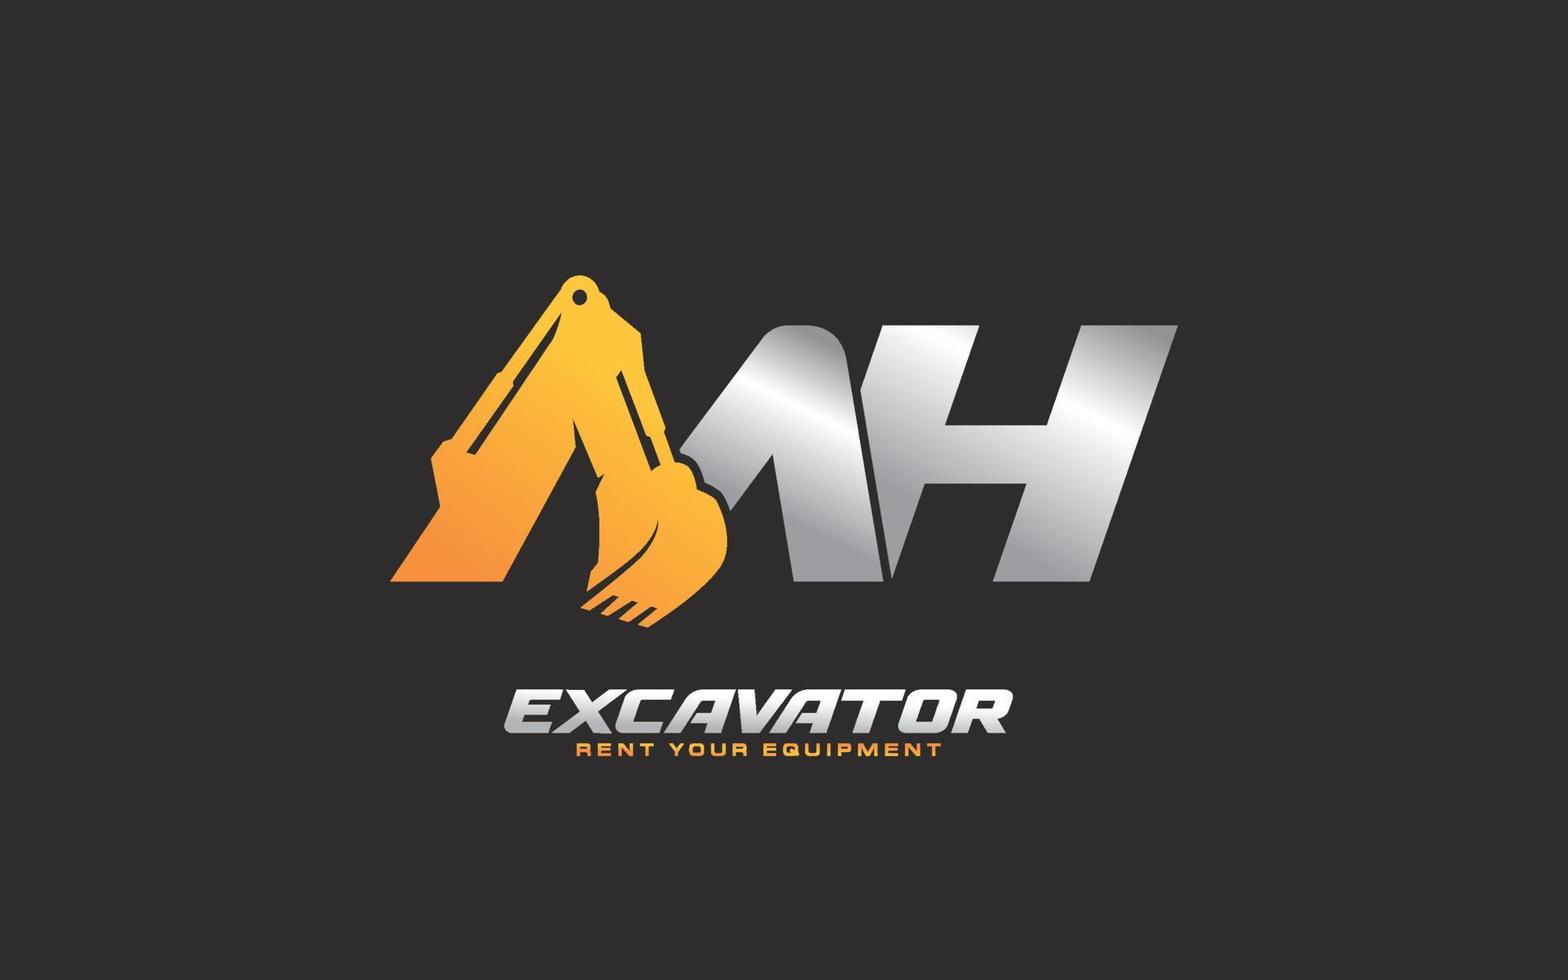 Excavadora con logotipo mh para empresa constructora. ilustración de vector de plantilla de equipo pesado para su marca.